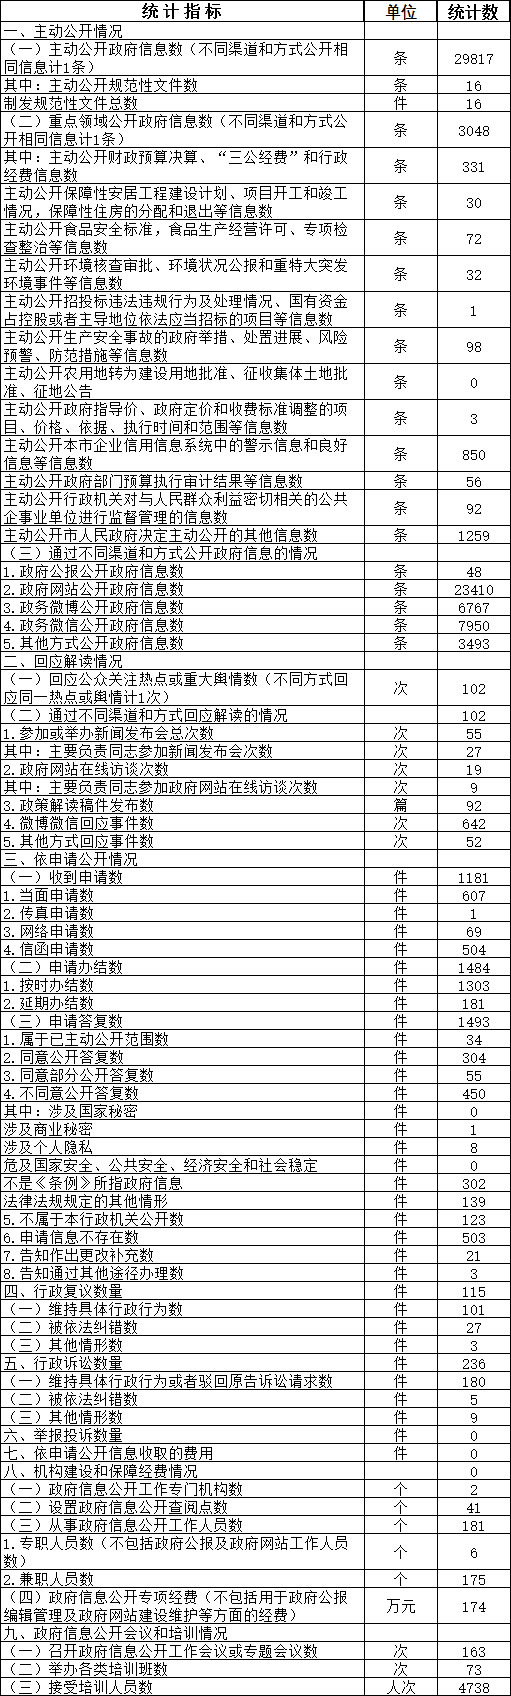 北京市西城区人民政府信息公开情况统计表(2017年度)